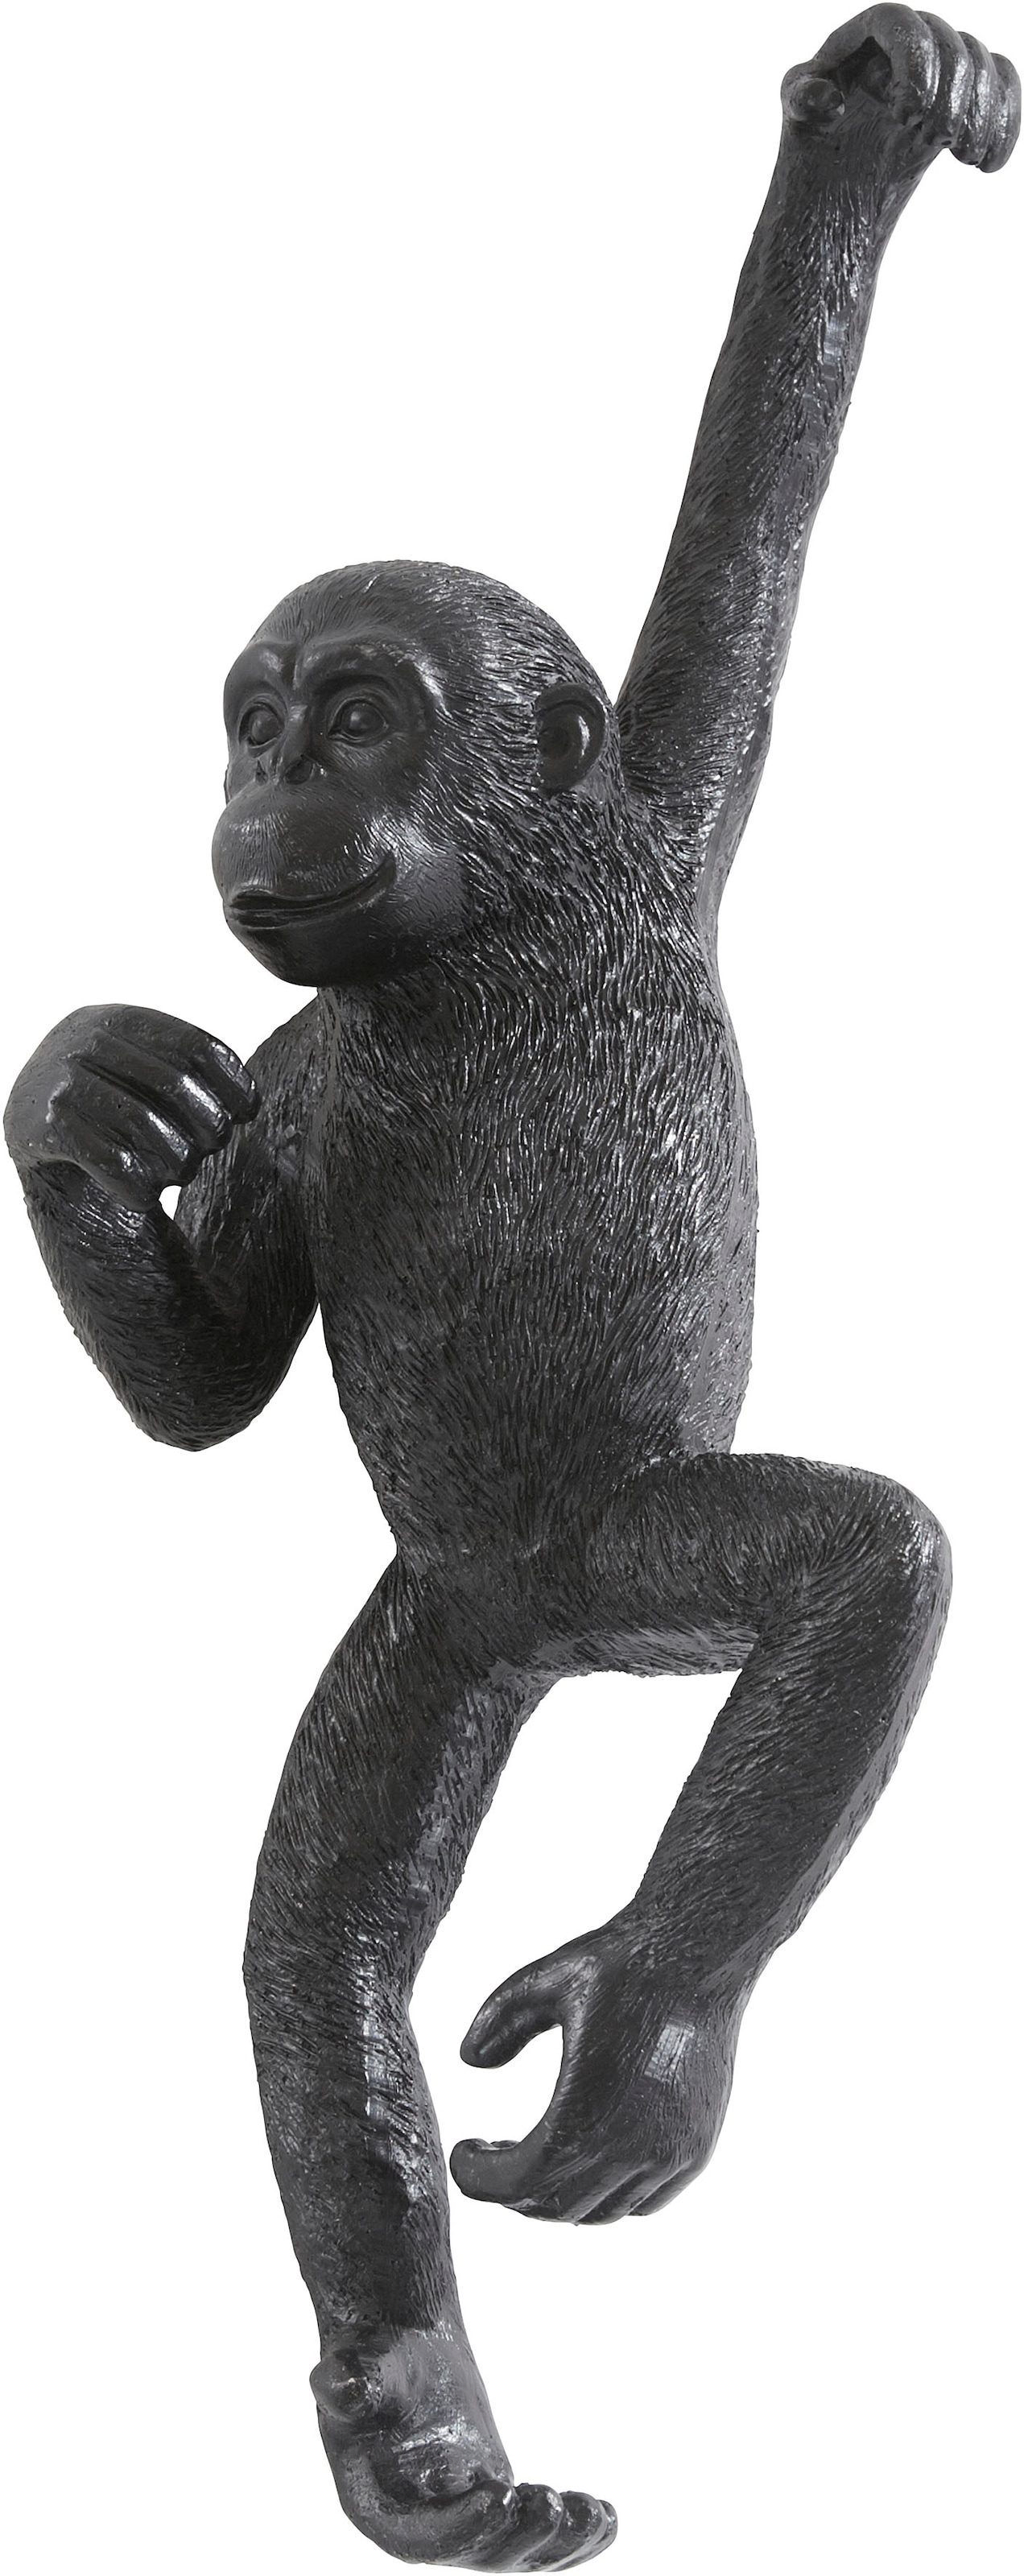 Auto-Deko-Schmuckstück, klein, hohe Nachahmung, Mini-Affenkönig-Figur, B